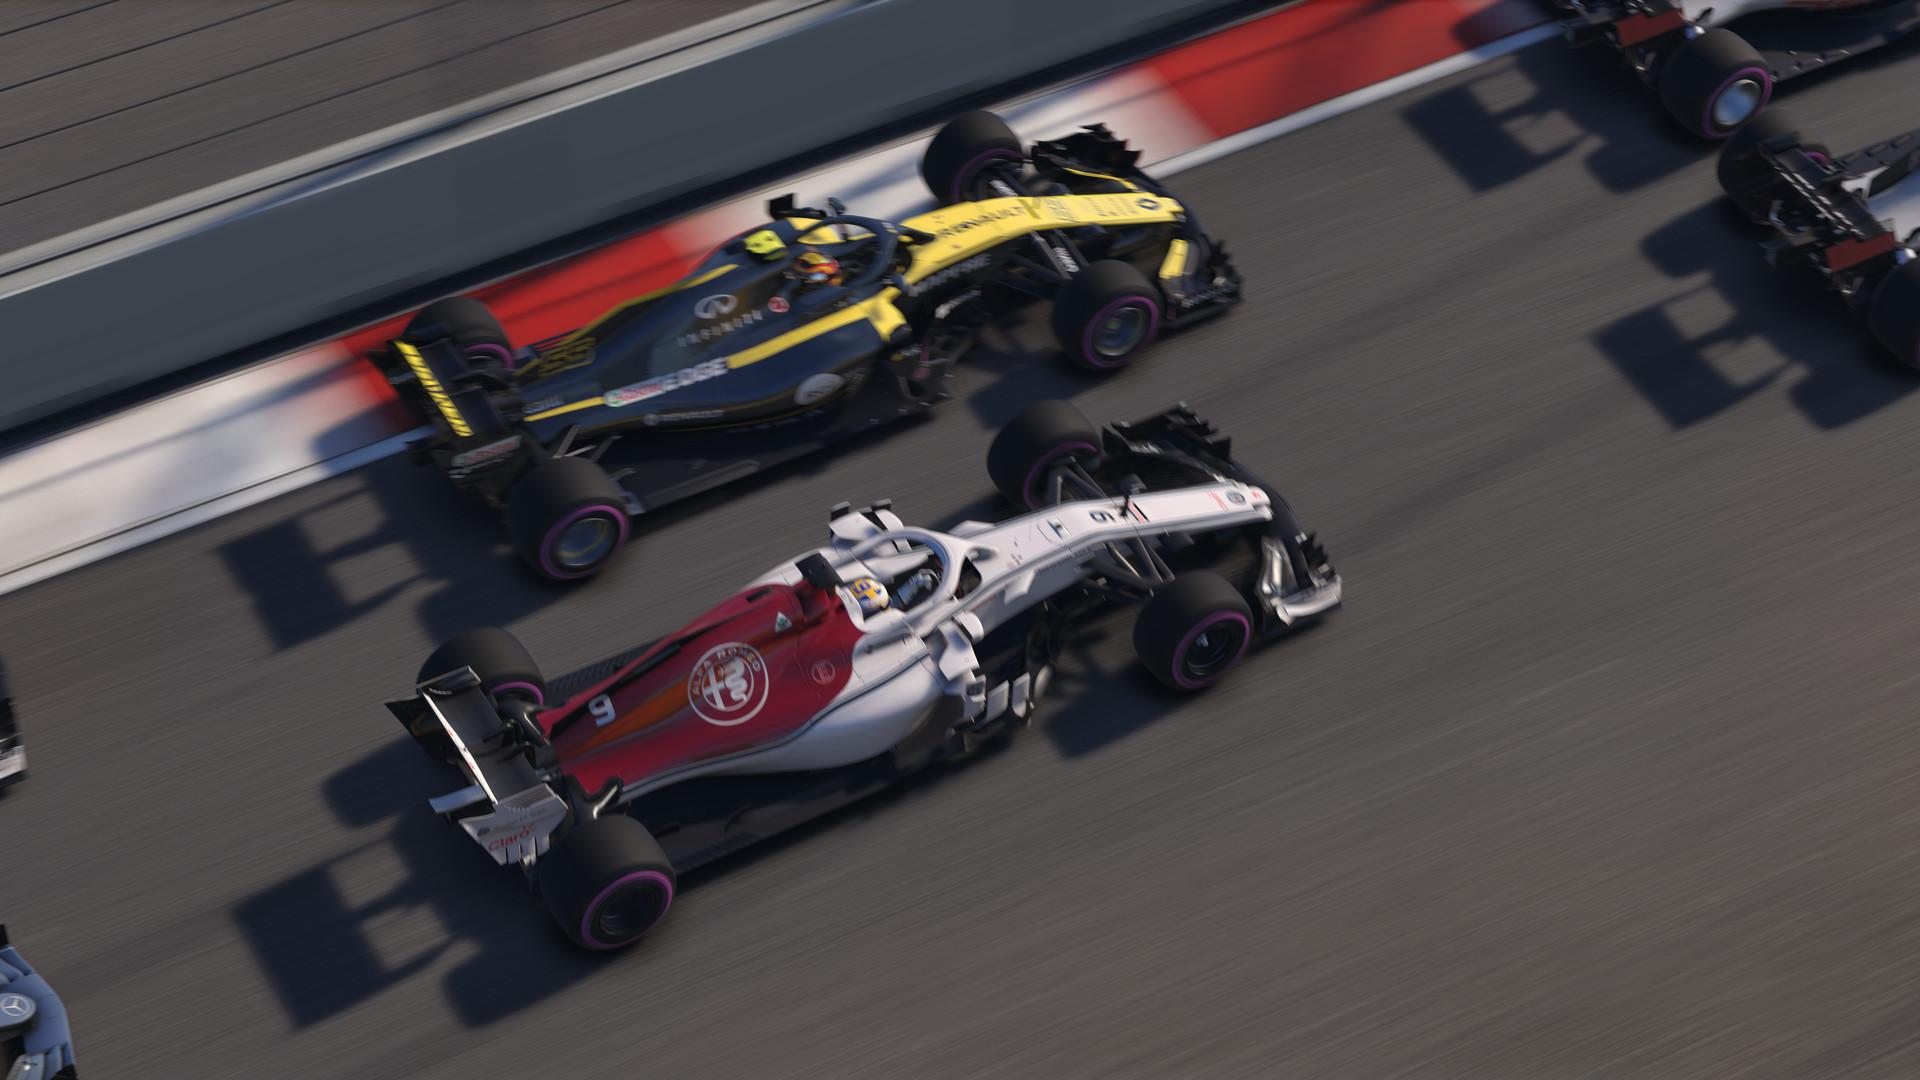 F1 2018 on Steam